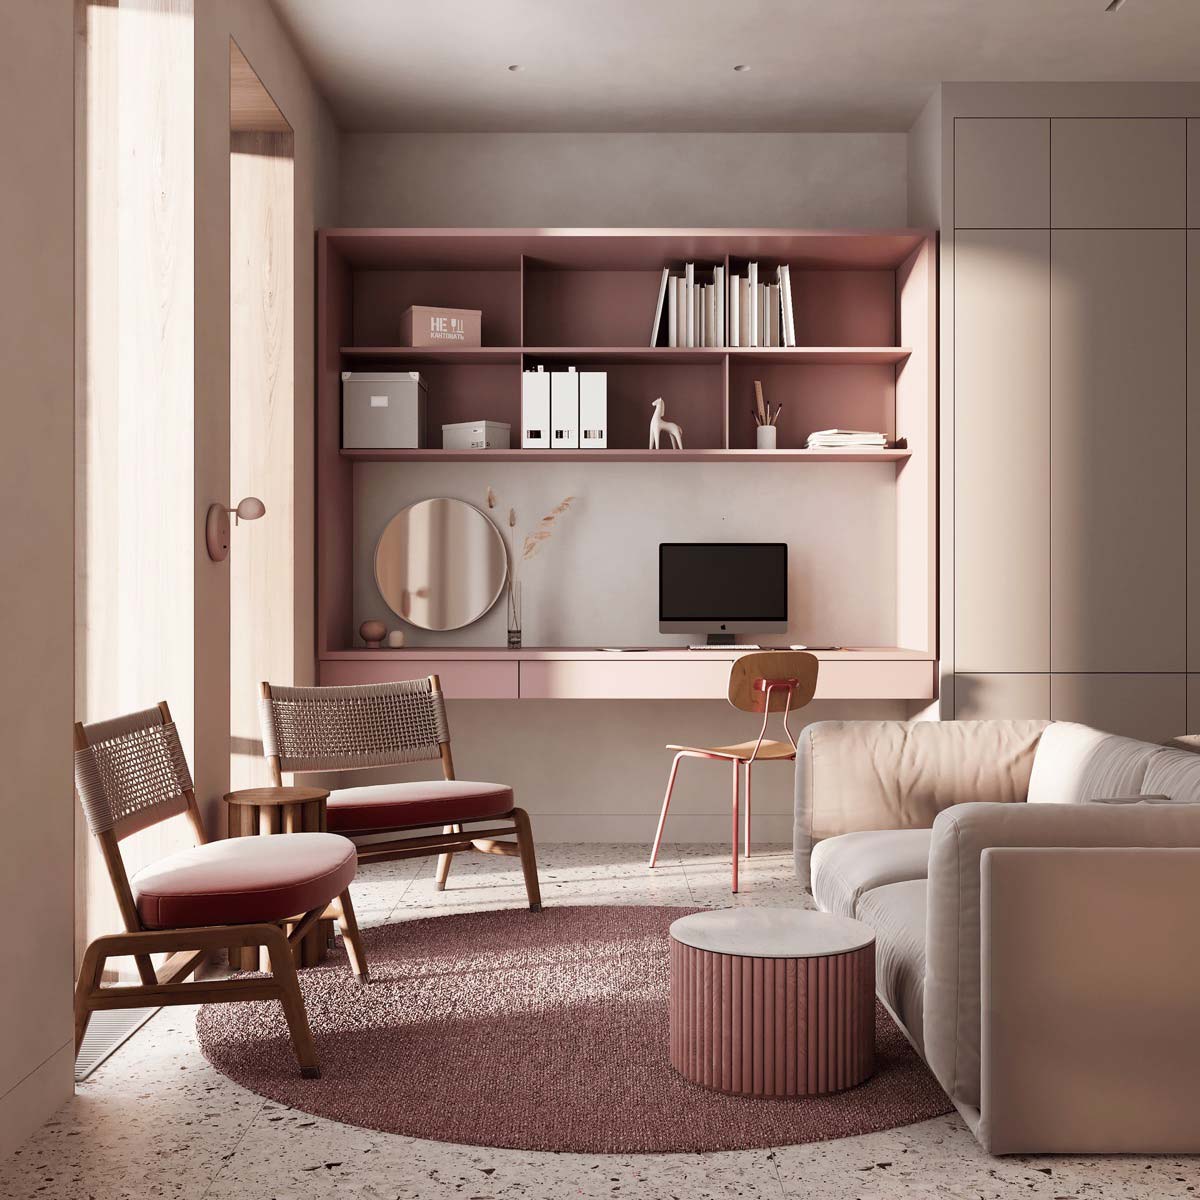 Căn phòng với những sắc độ hồng-tím. Nguồn: home-designing.com